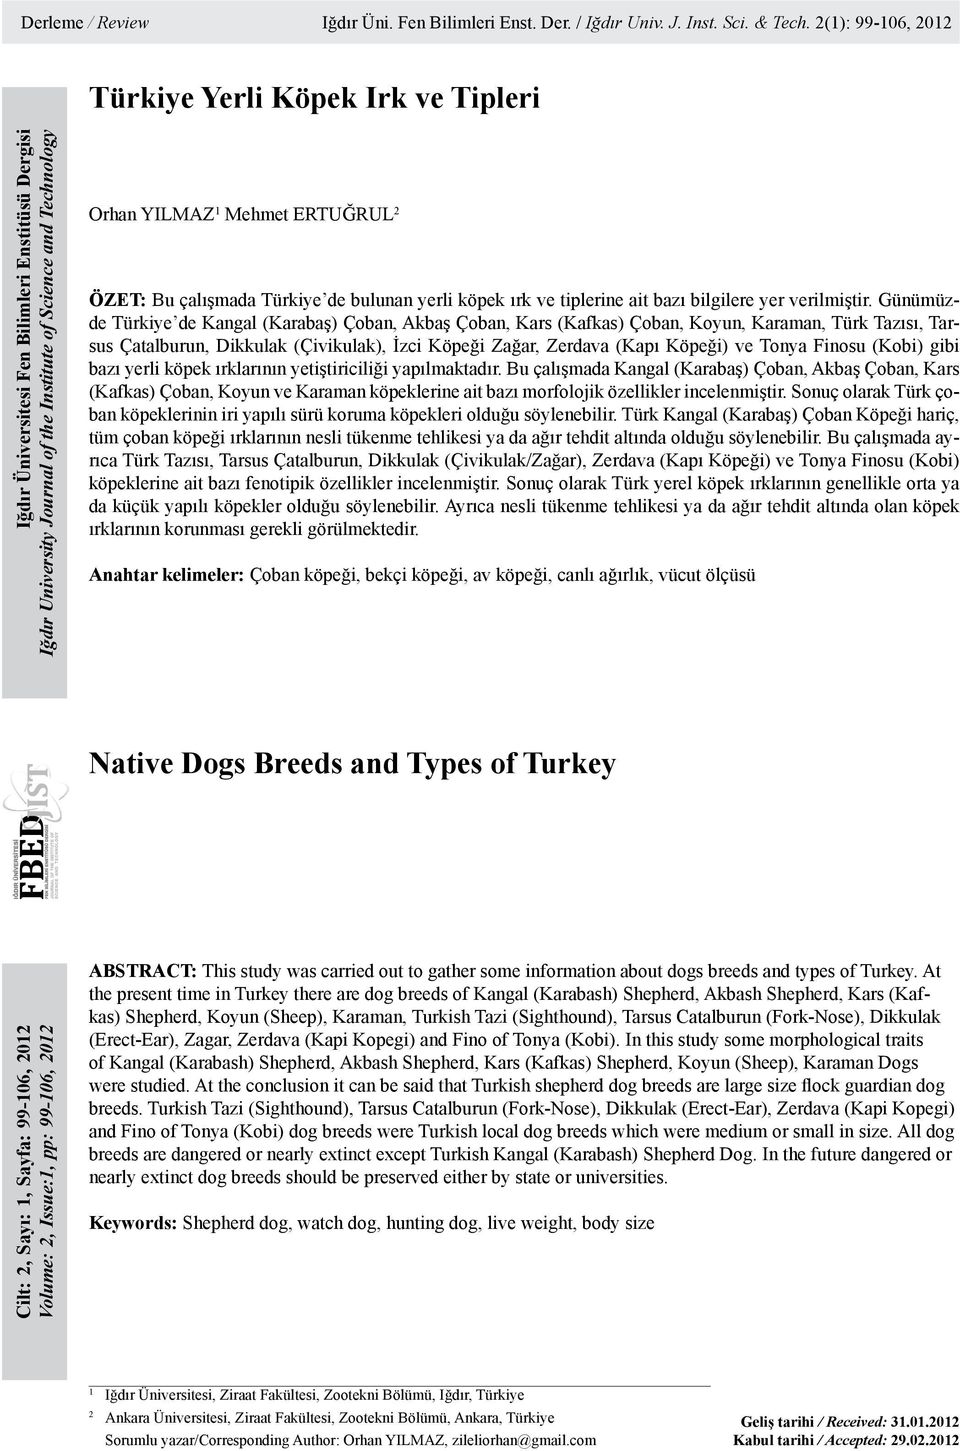 ERTUĞRUL 2 ÖZET: Bu çalışmada Türkiye de bulunan yerli köpek ırk ve tiplerine ait bazı bilgilere yer verilmiştir.